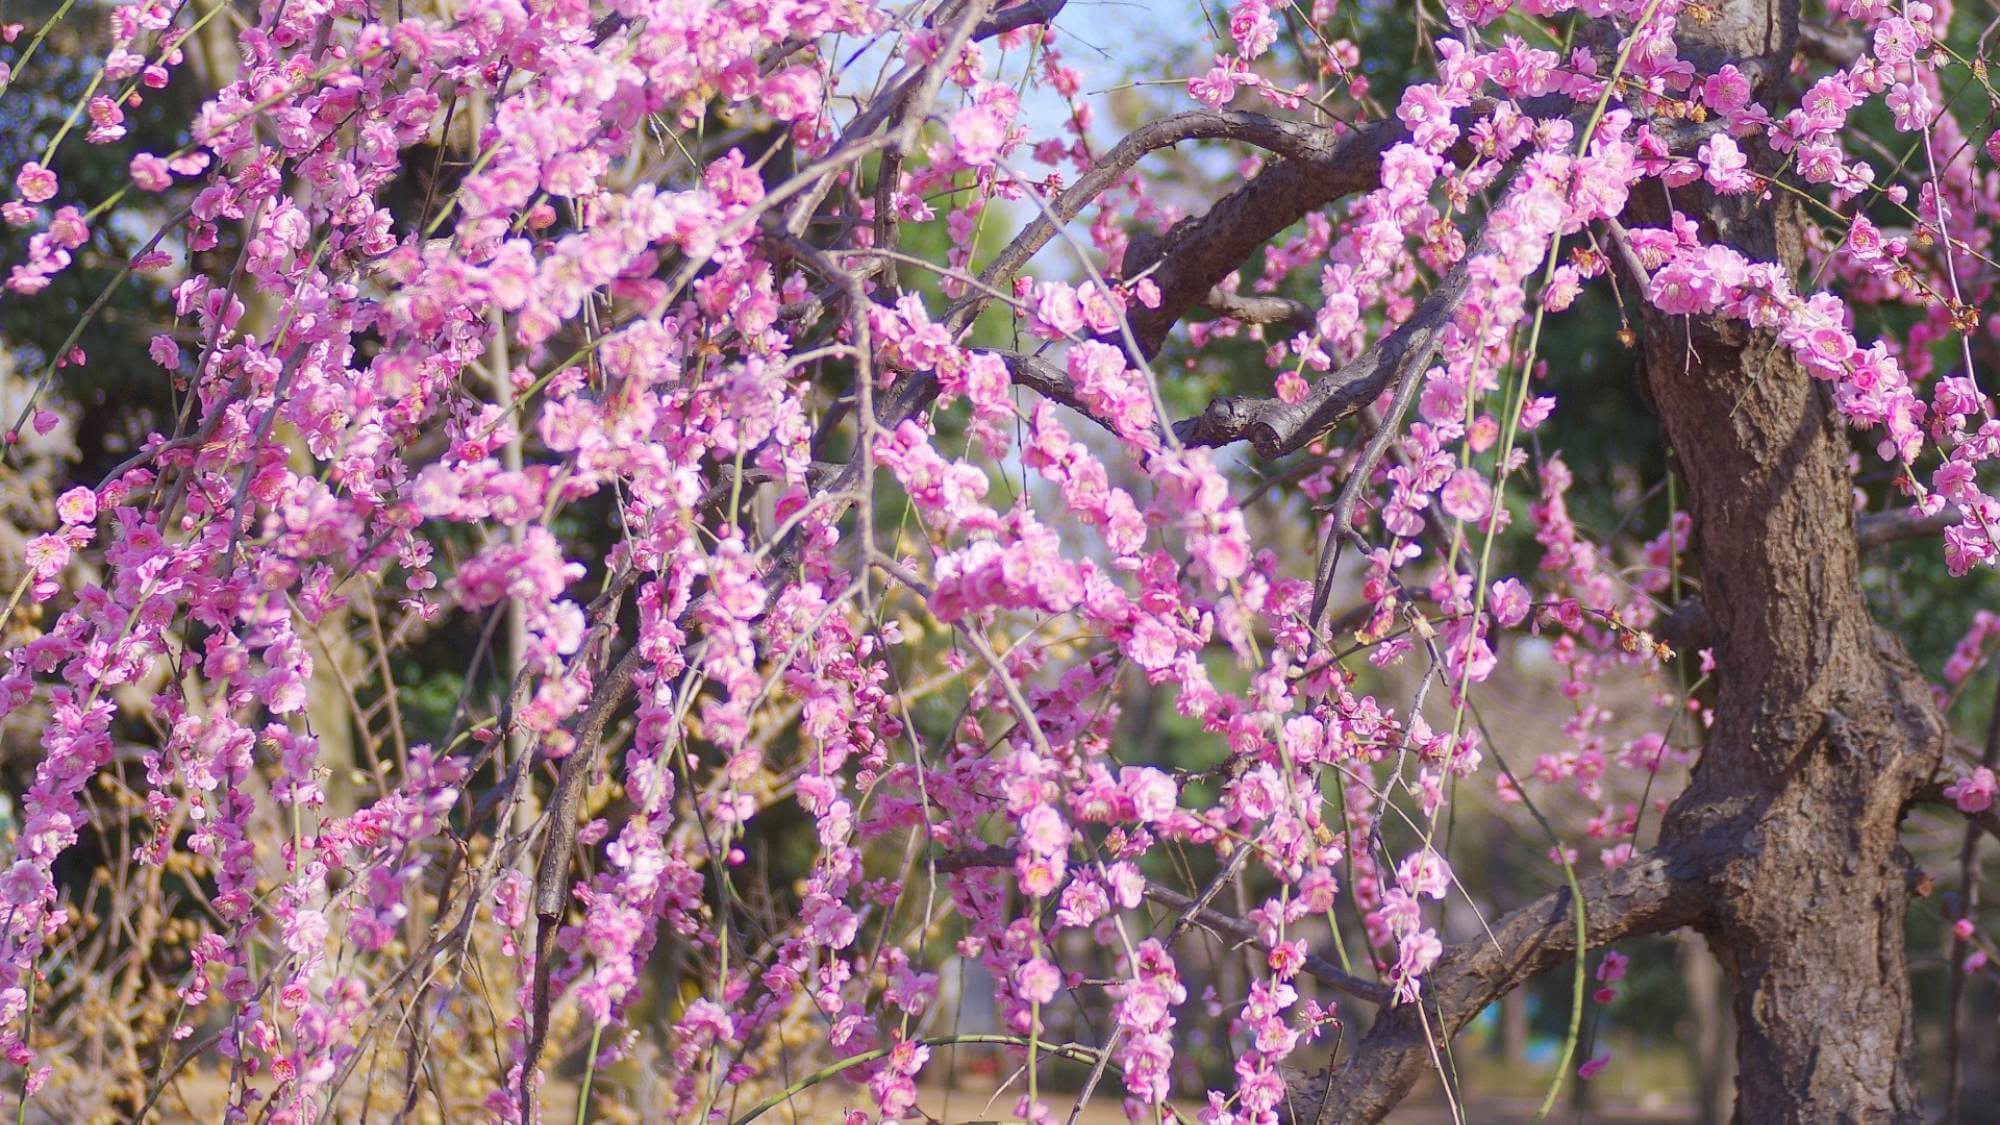 【不老園】2〜3月の不老園は梅が美しく咲き誇り、各地から多くの人々が訪れる人気の観梅スポットです